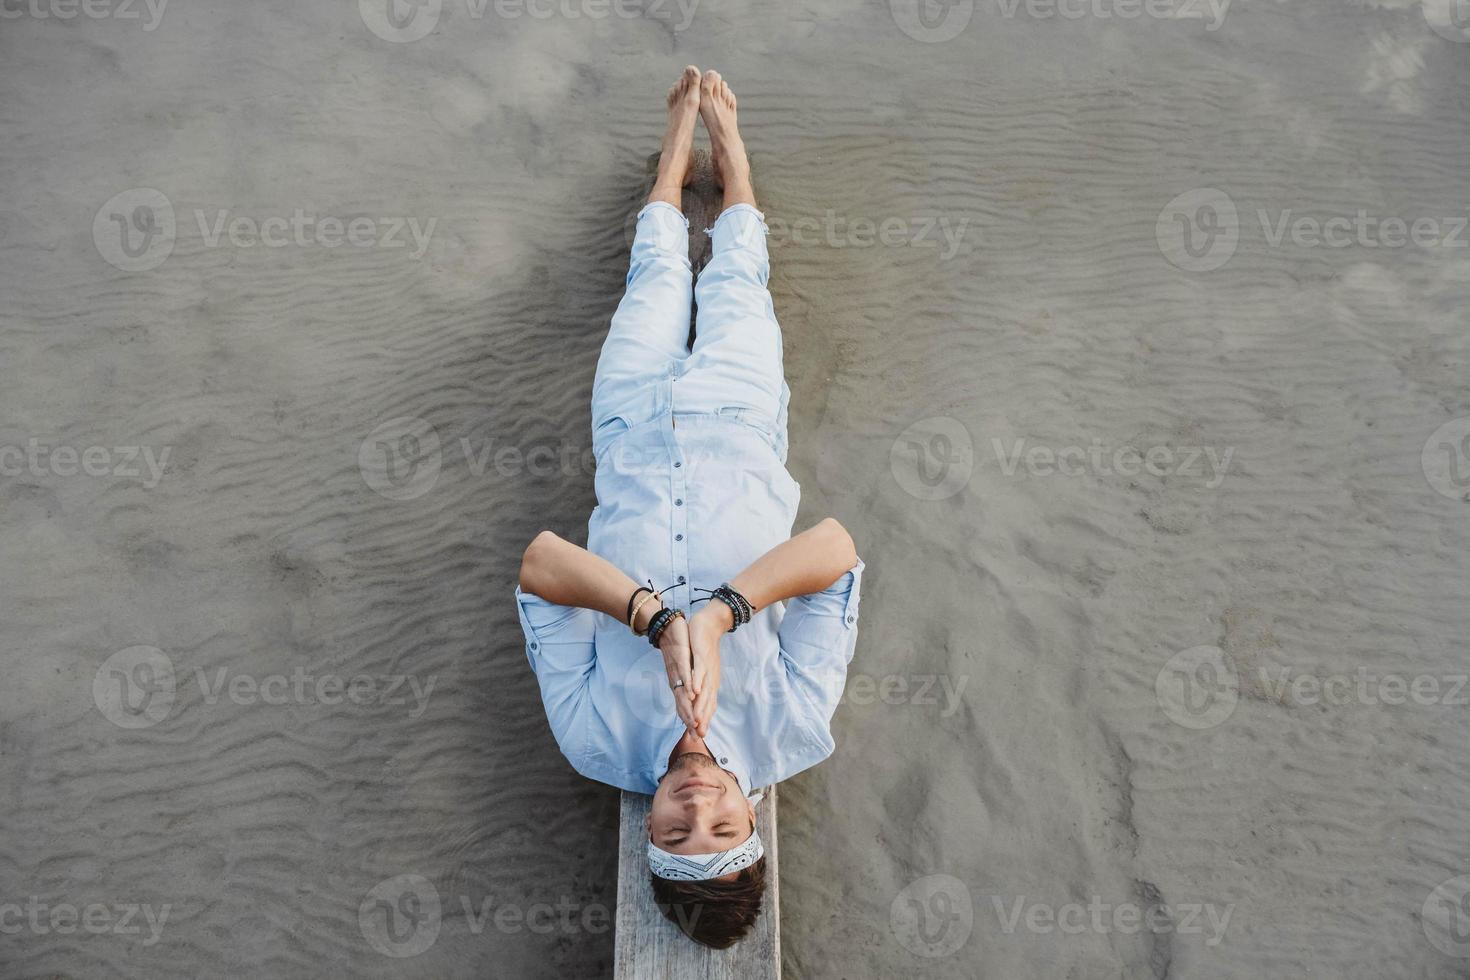 man liggend op houten brug tegen de achtergrond van water foto